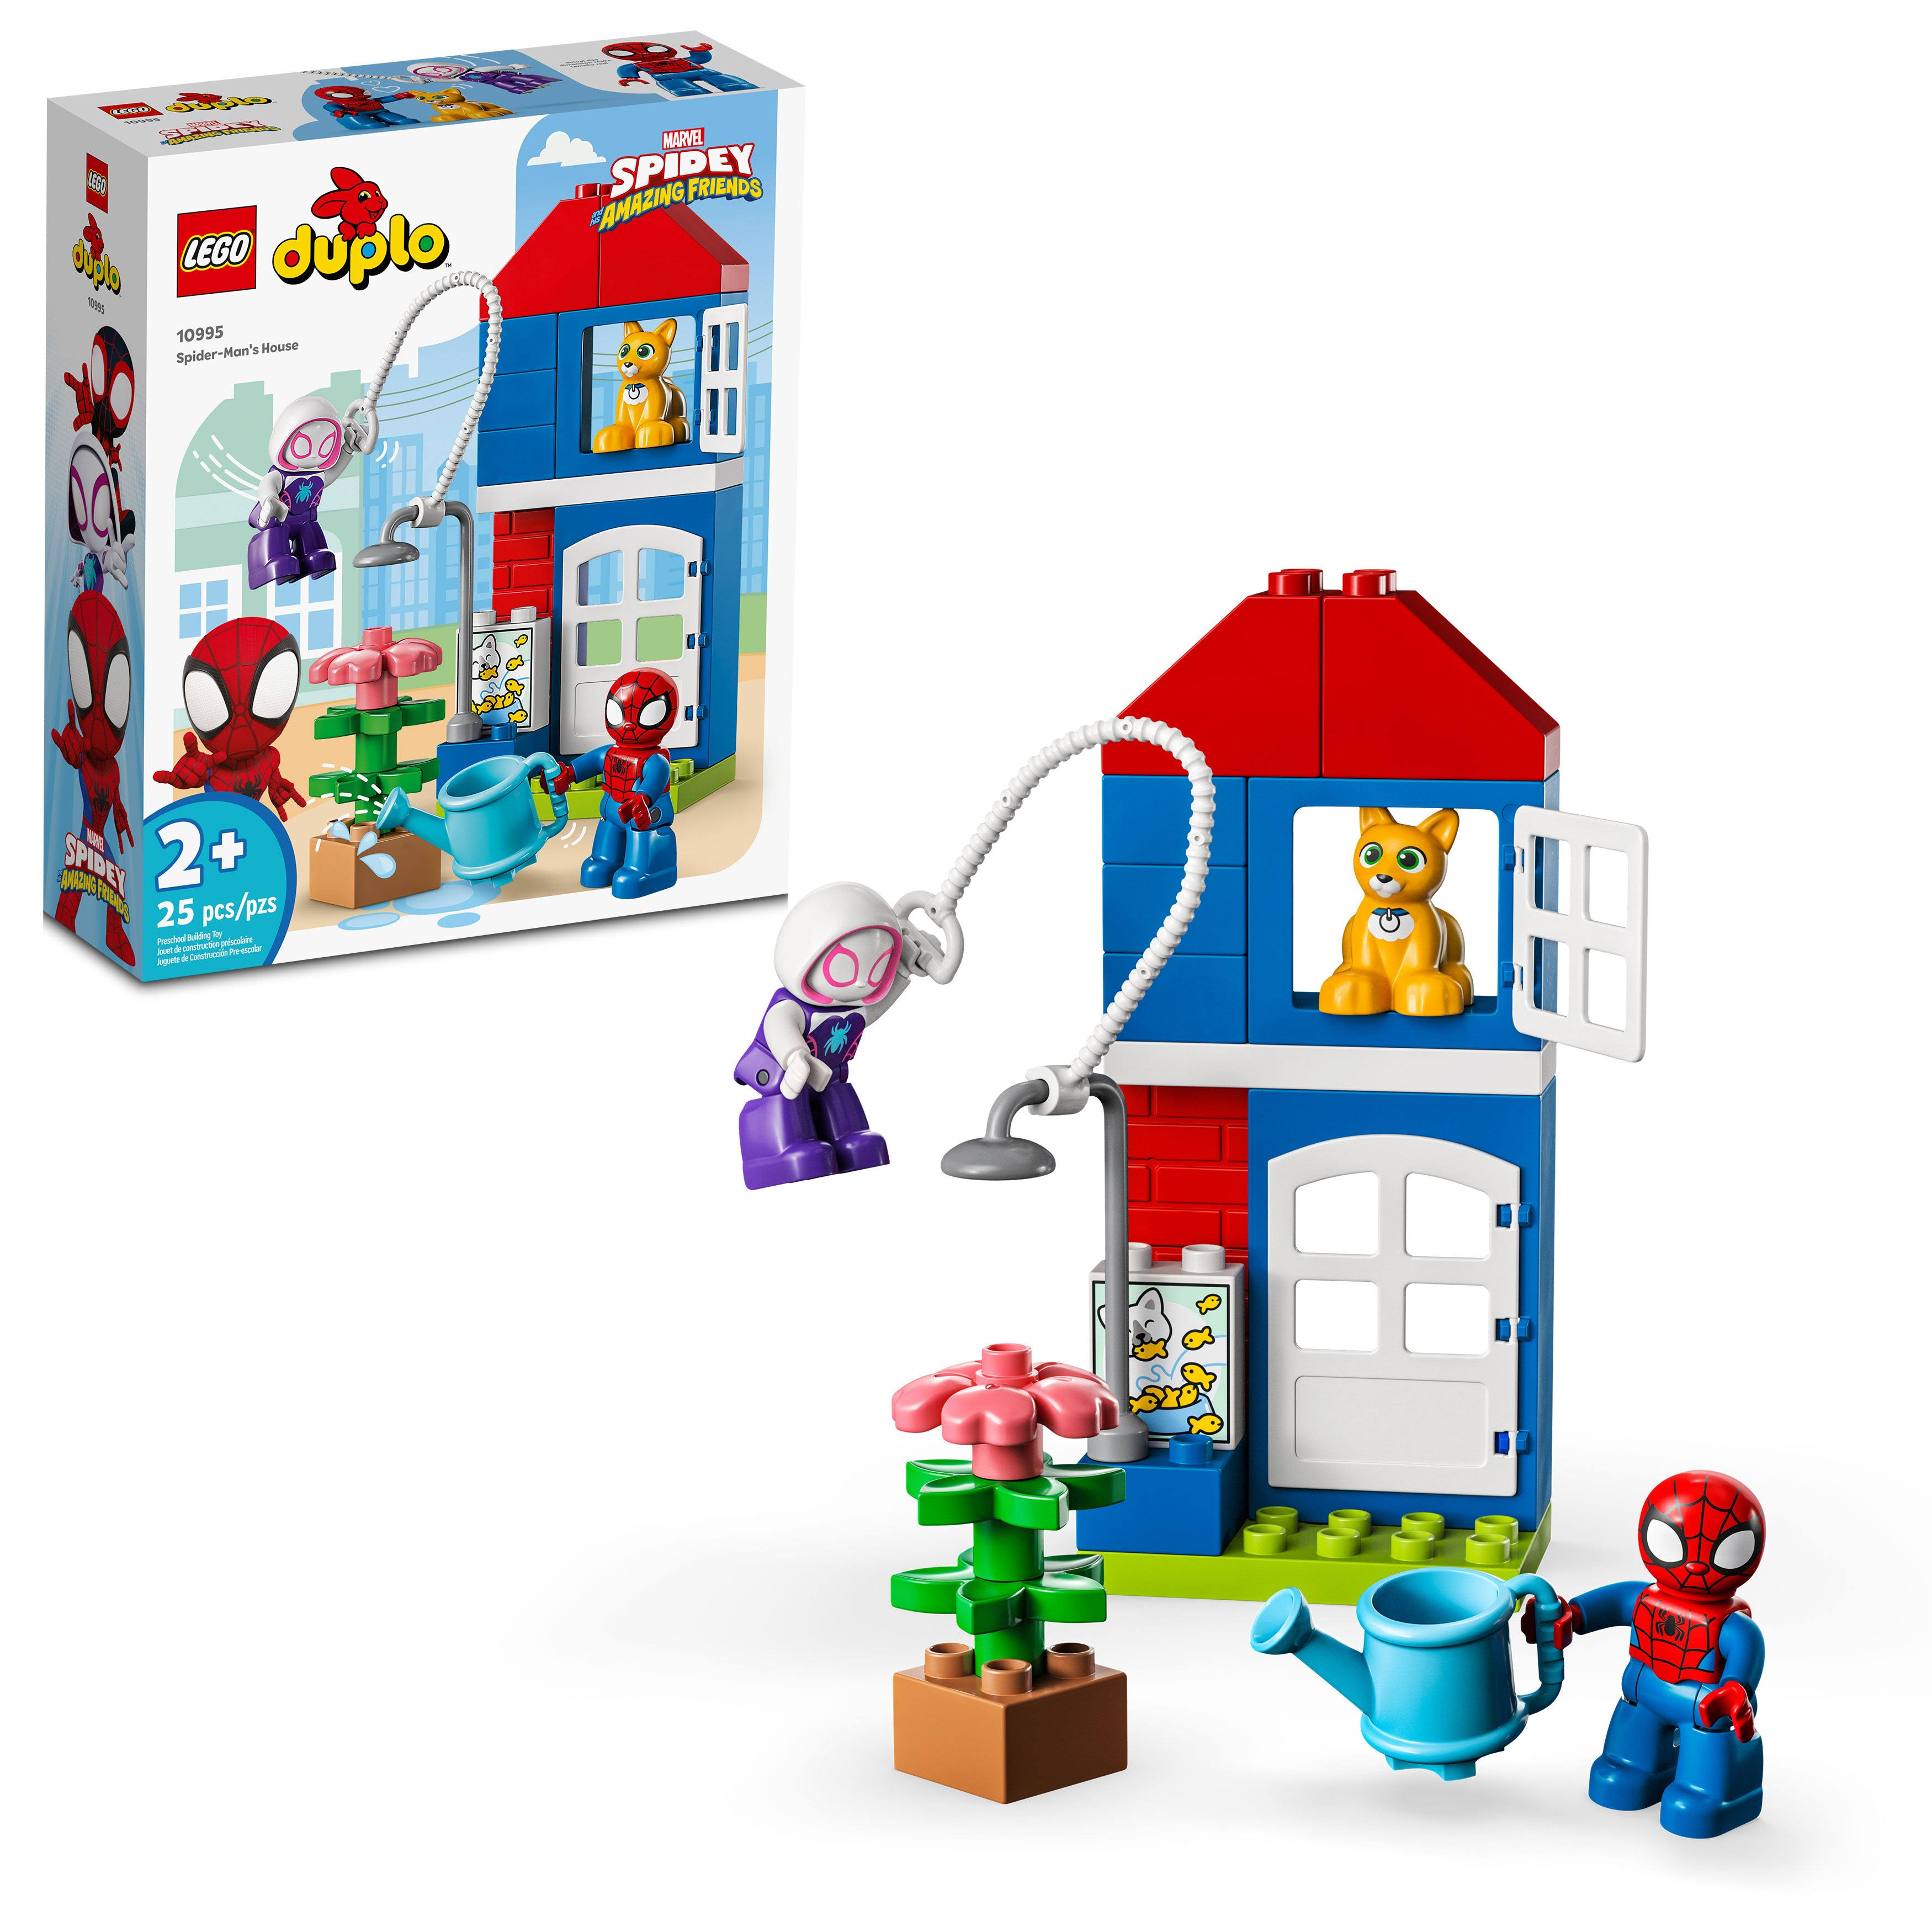 LEGO DUPLO Super Heroes: Marvel Spider-Man's House Building Set (10995)